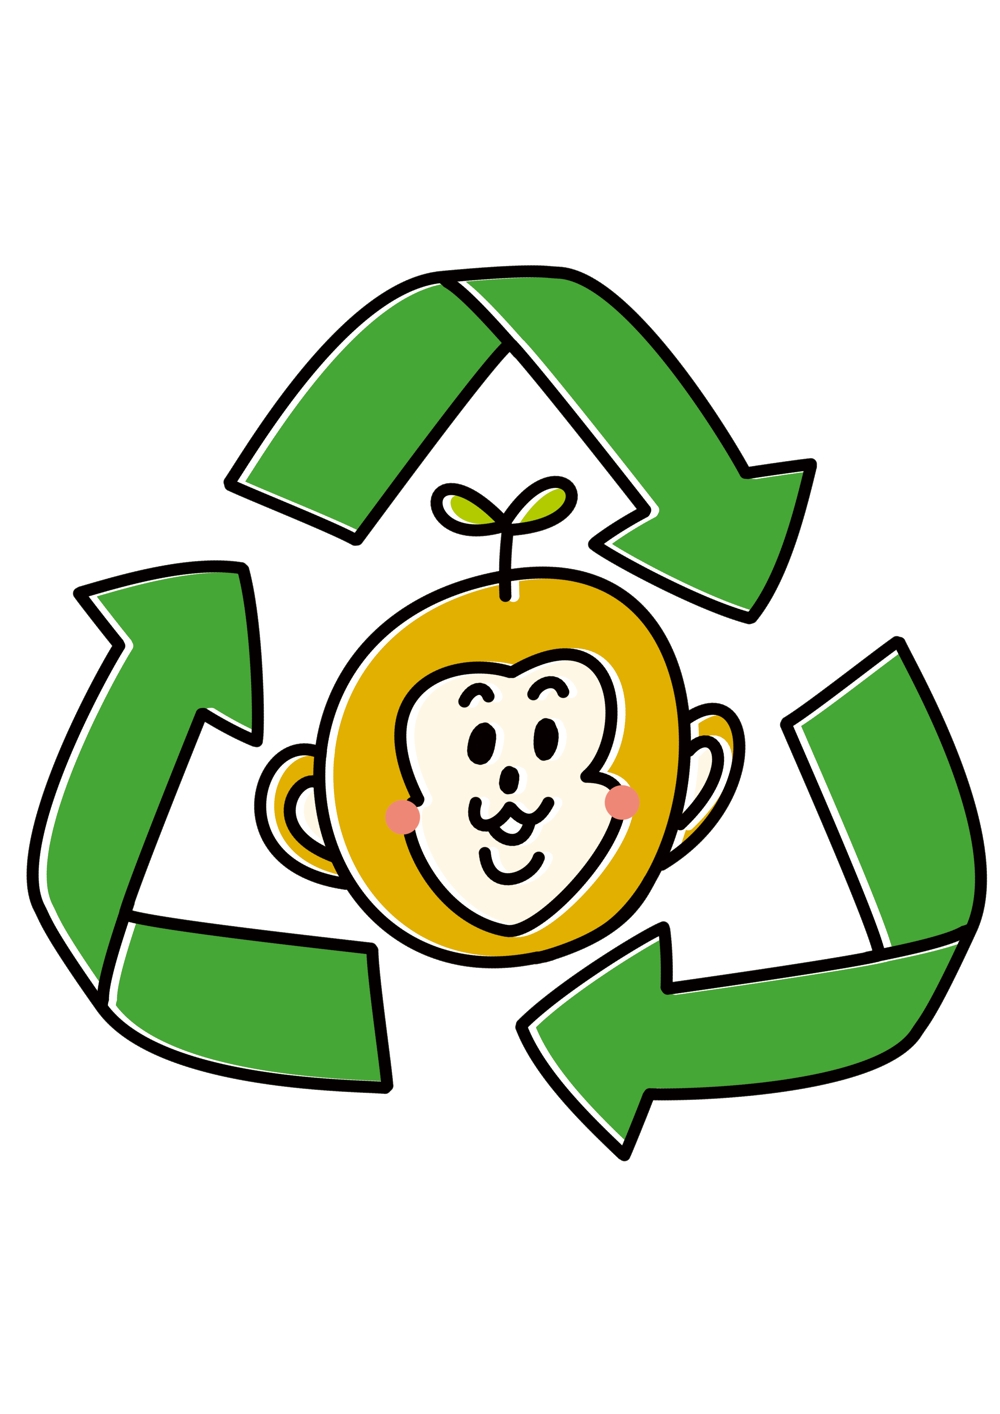 リサイクルショップのウェブサイトのロゴ